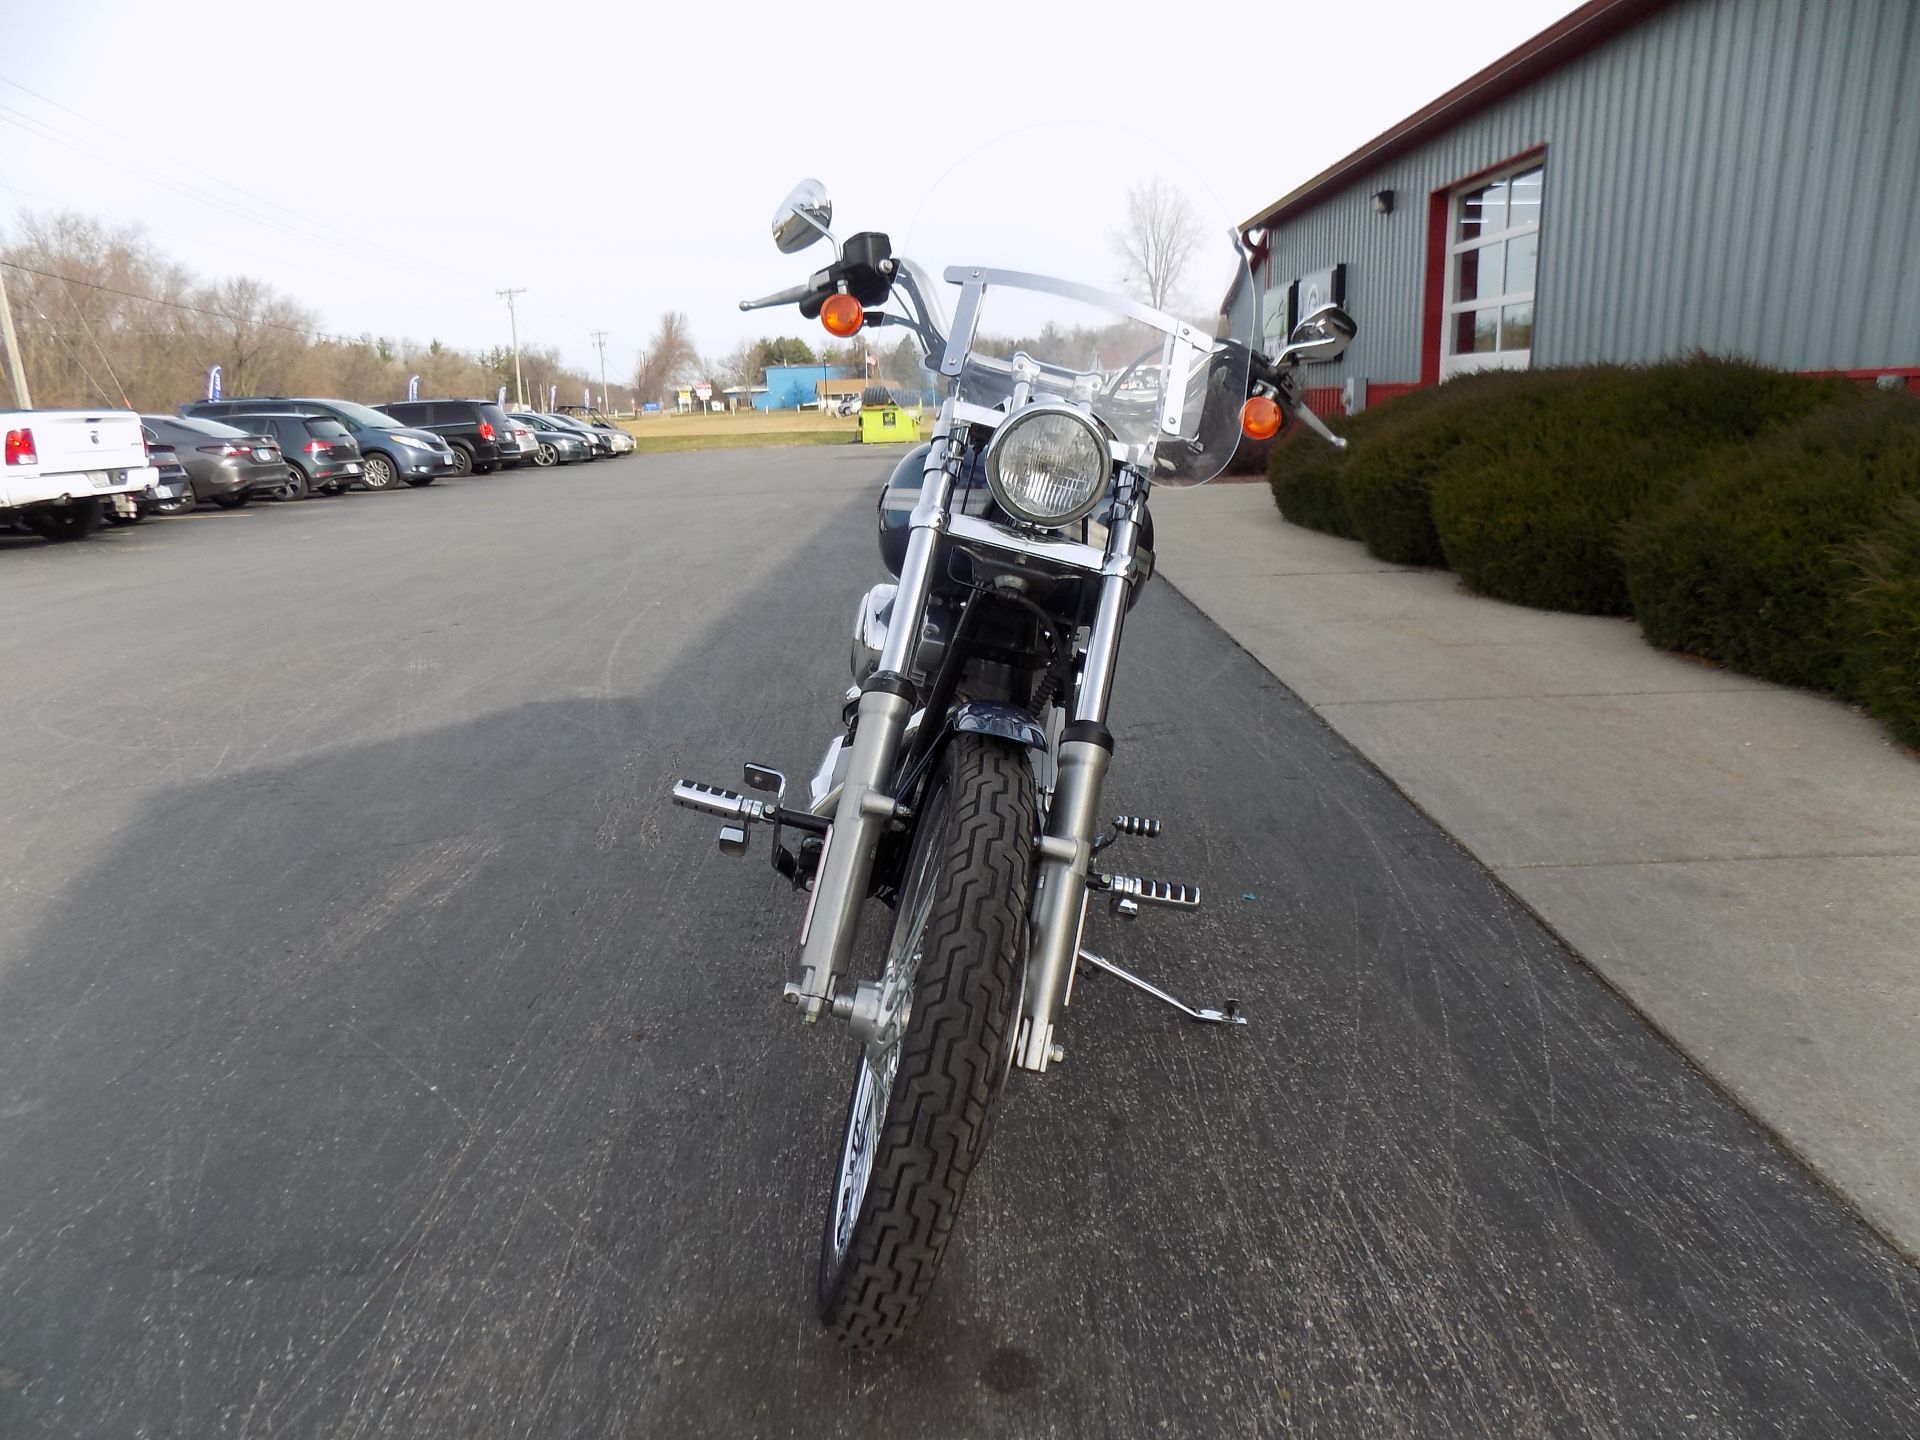 2003 Harley-Davidson FXST/FXSTI Softail®  Standard in Janesville, Wisconsin - Photo 3